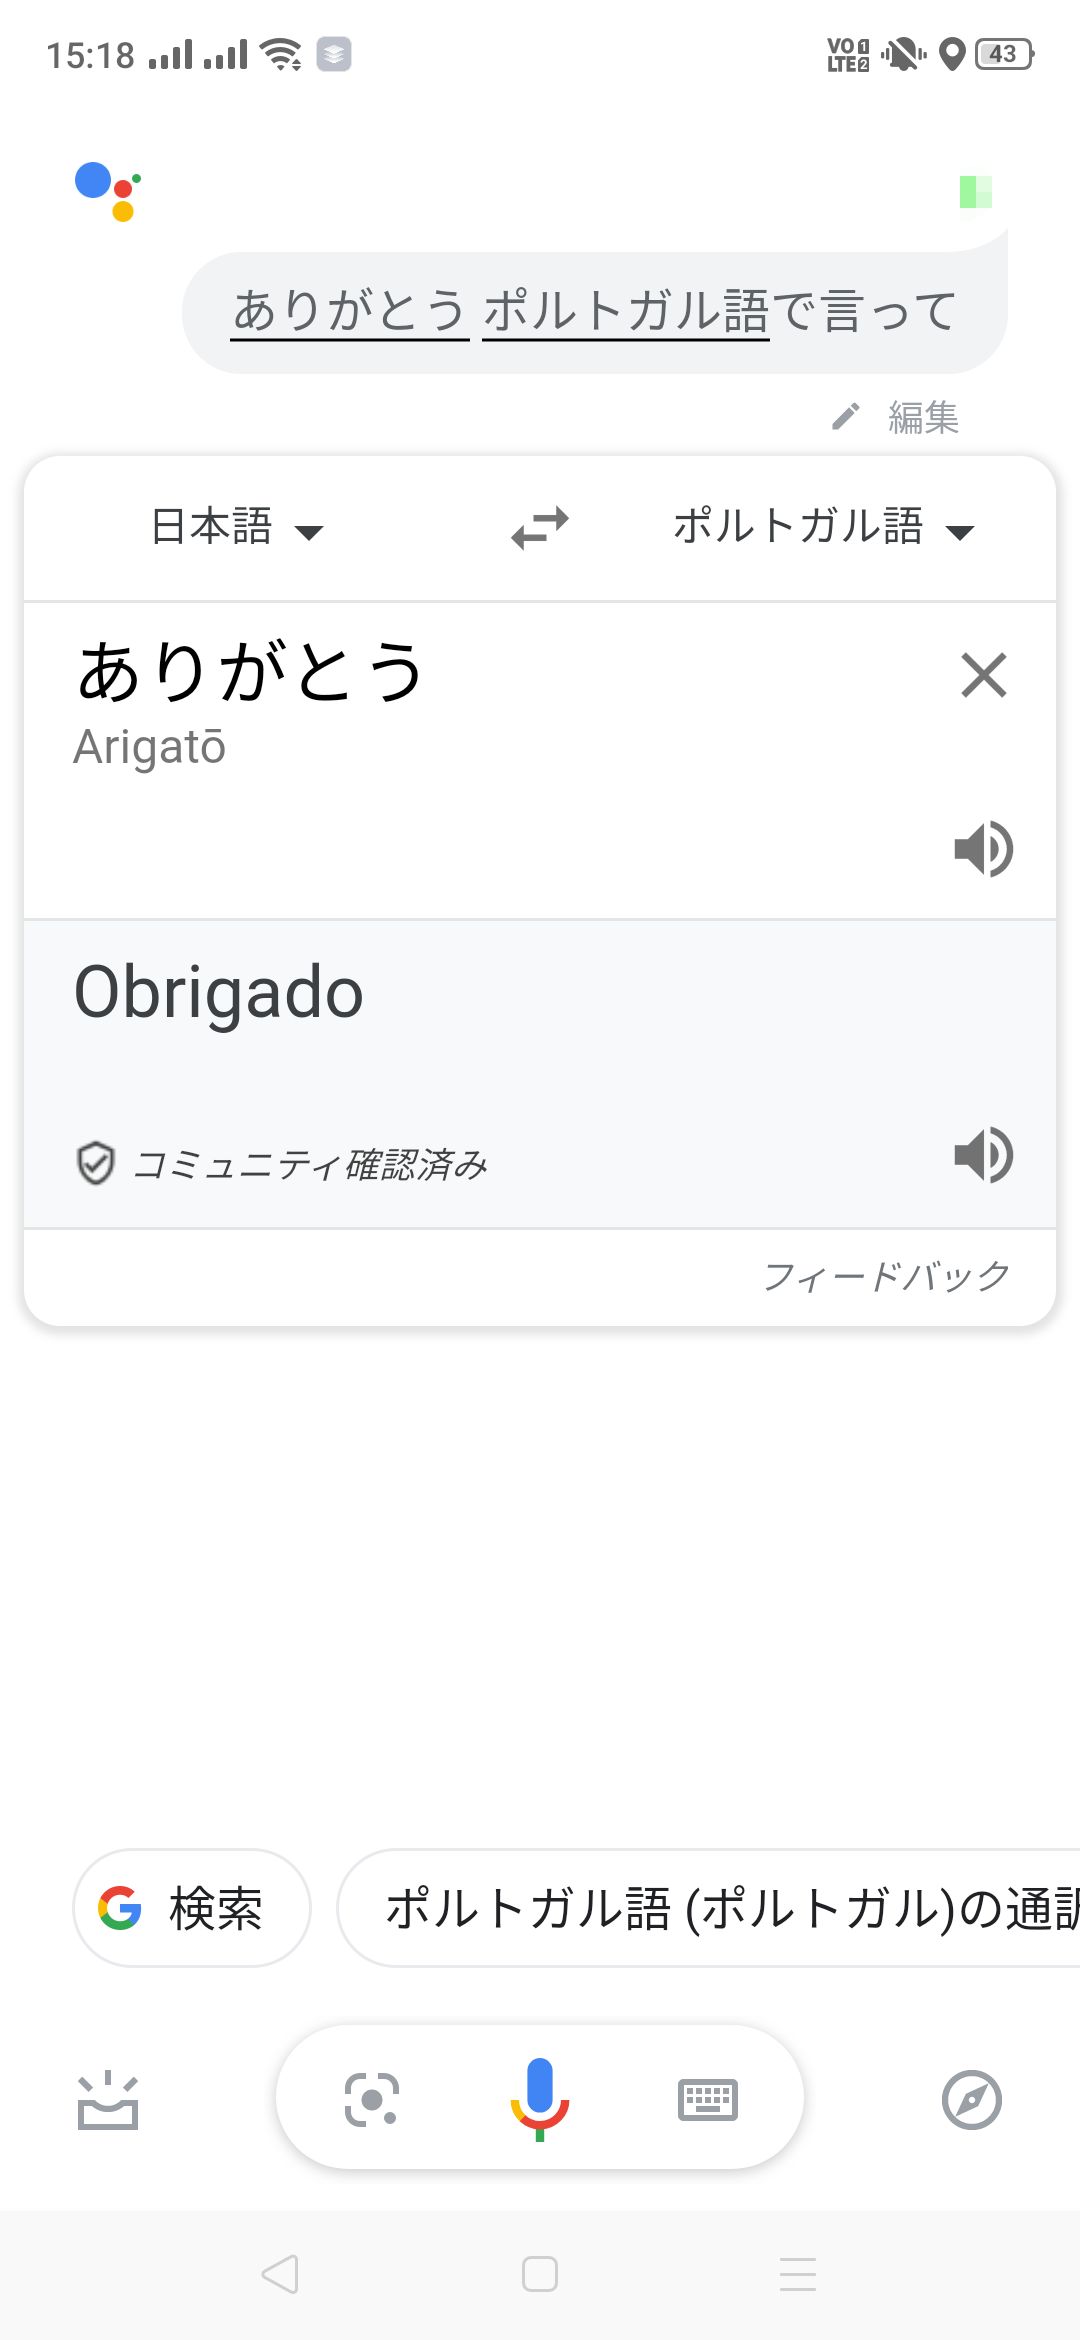 ありがとうをポルトガル語で言って